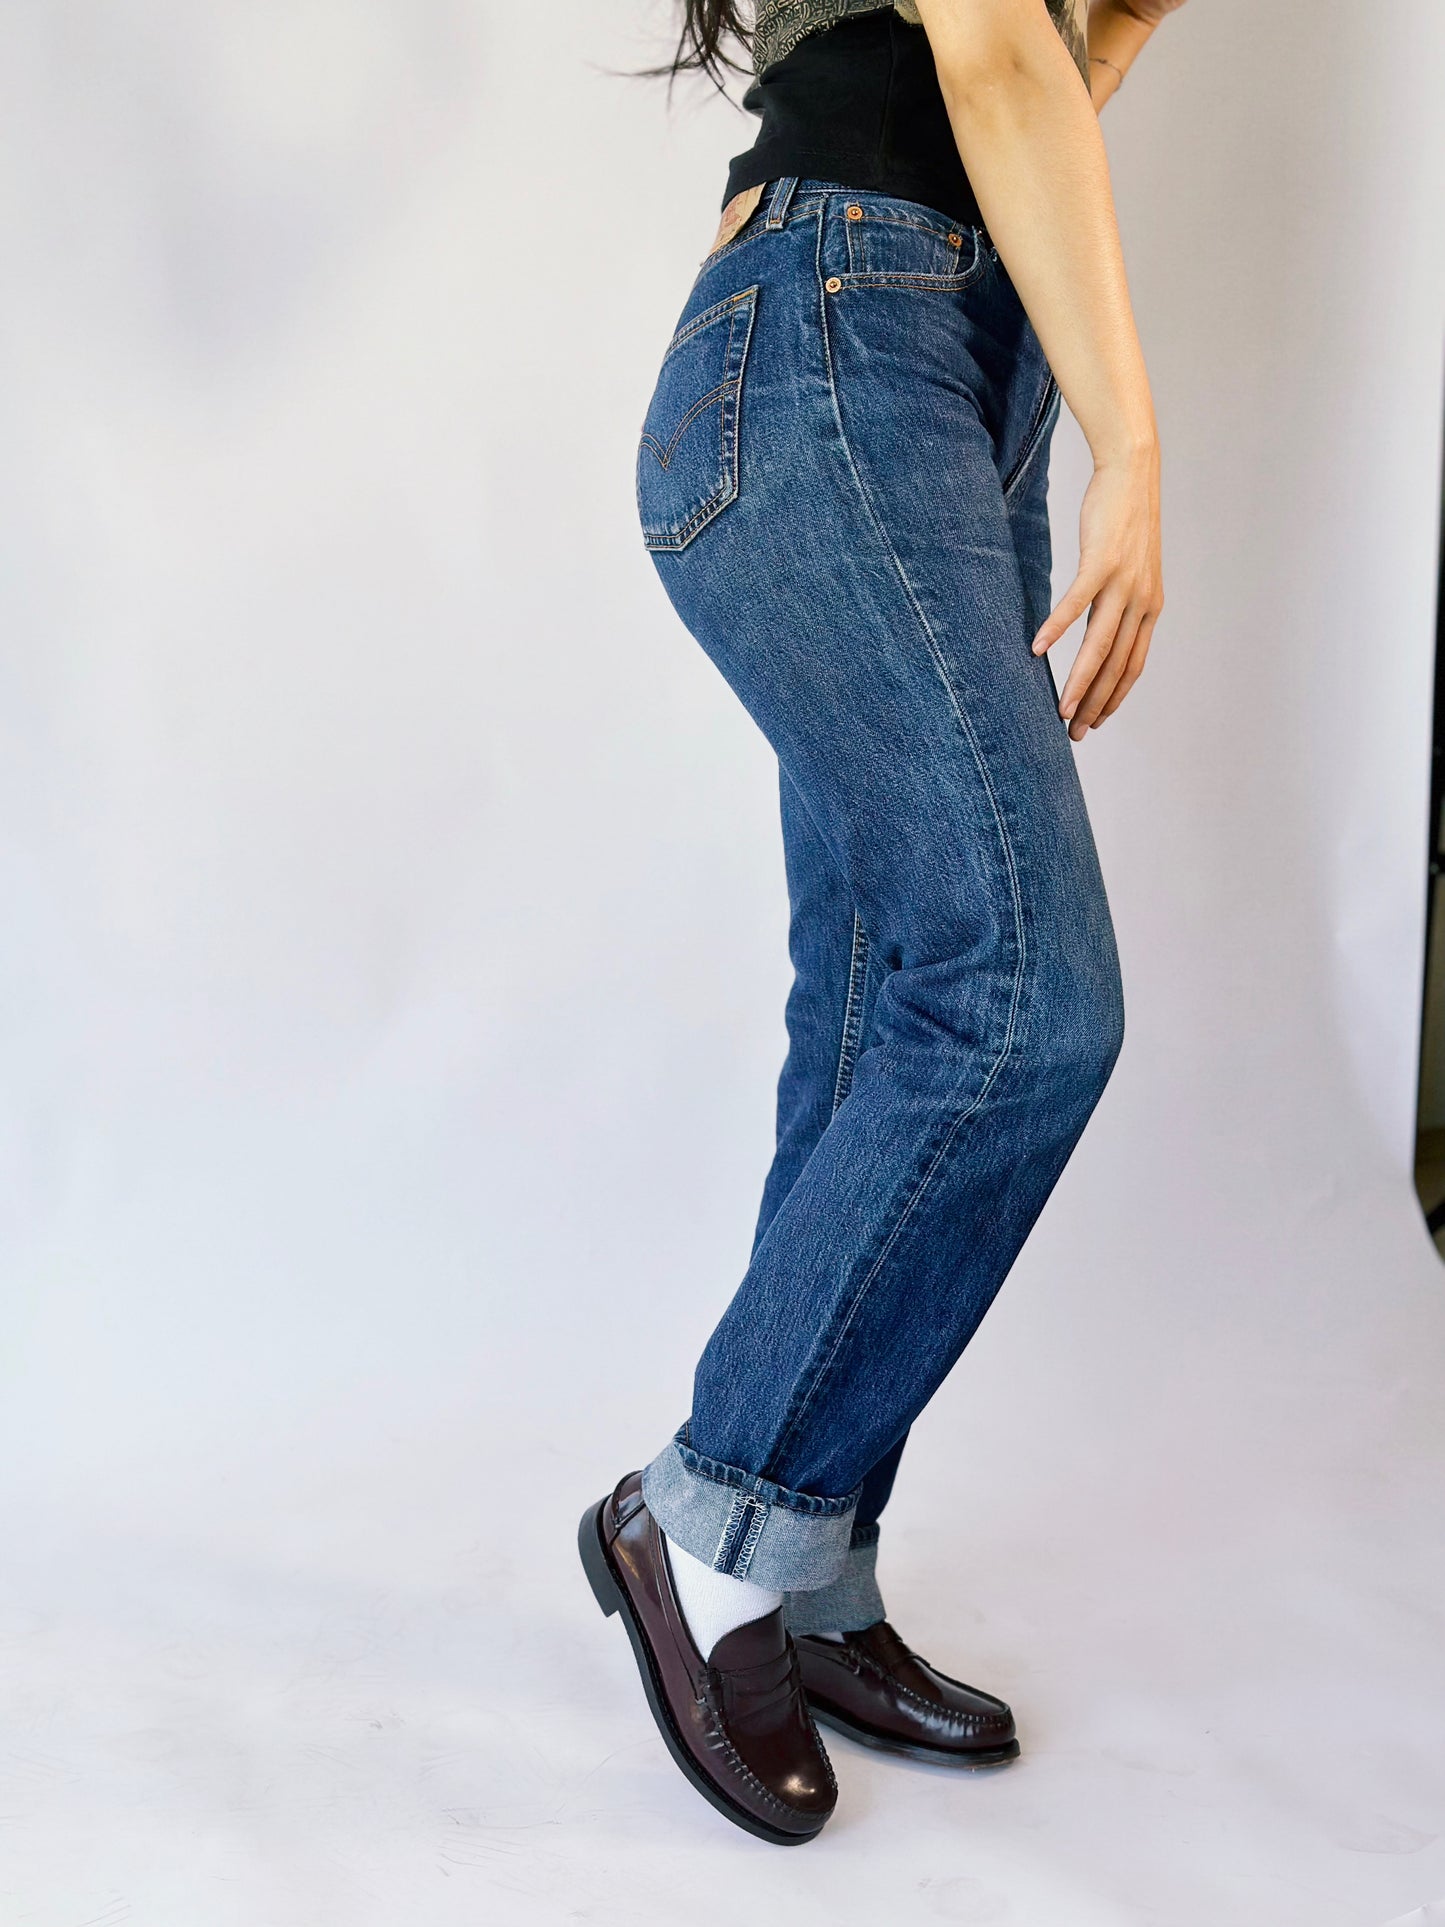 Levi’s Jeans [36]